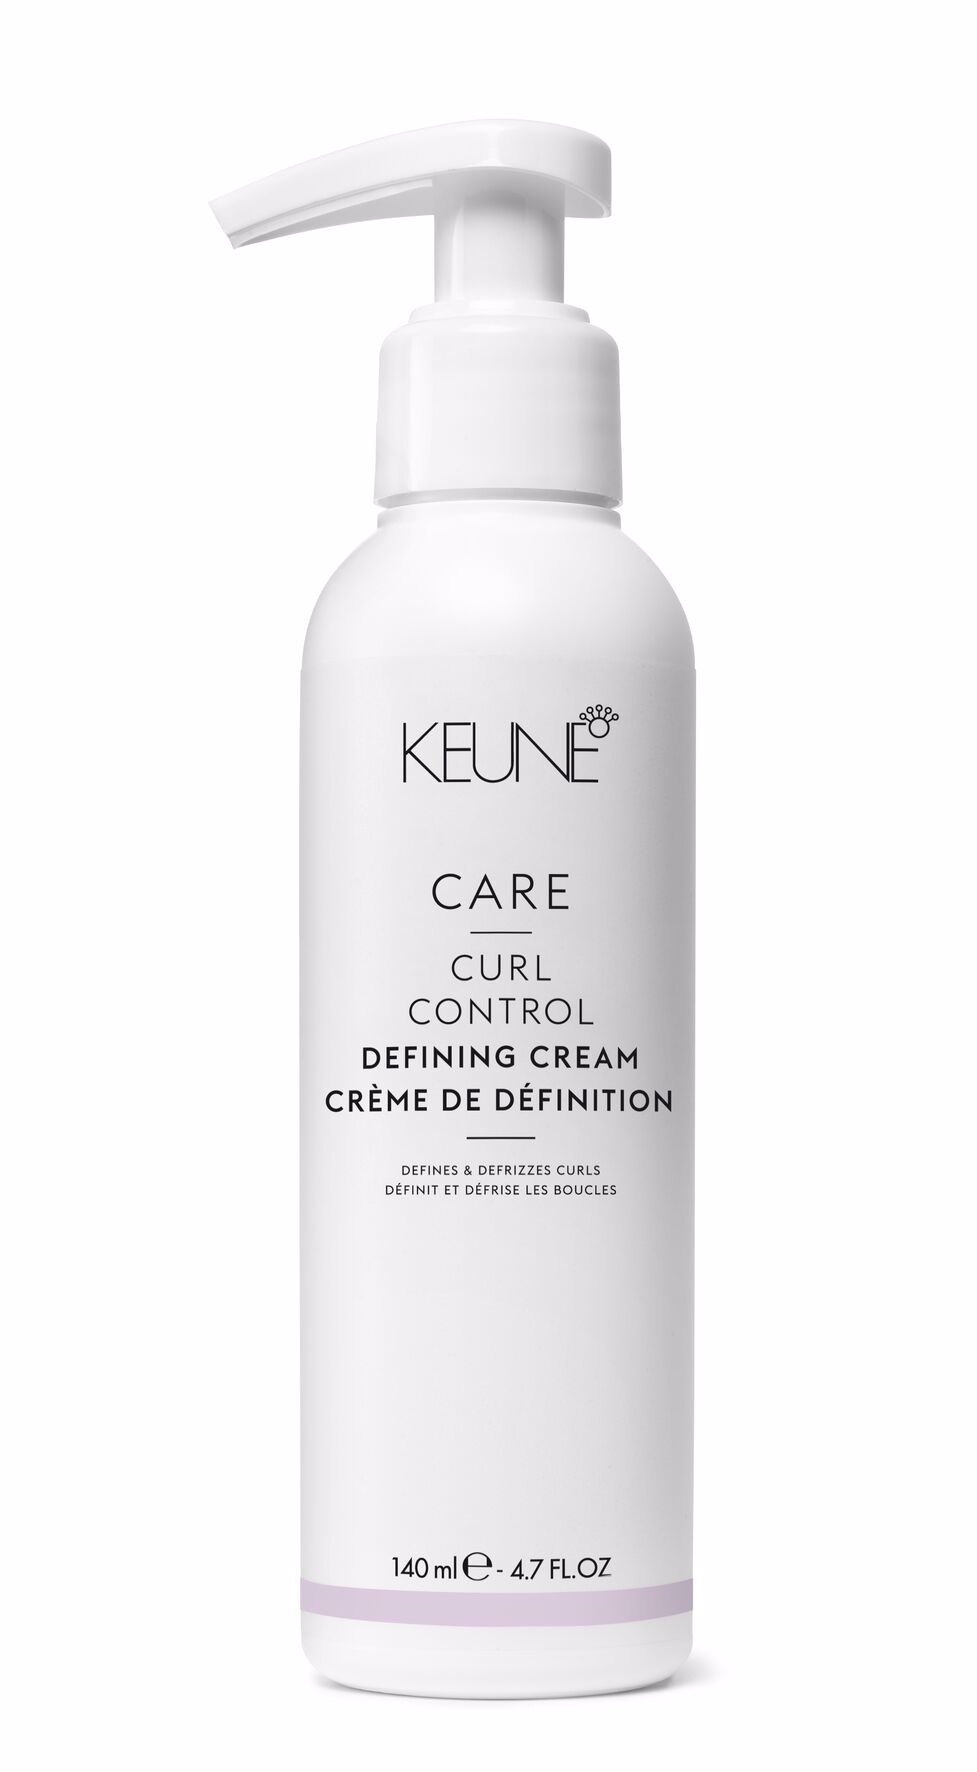 CARE Curl Cont Defining Cream - la crème parfaite pour les boucles dynamiques avec un effet anti-frisottis. Donnez à vos cheveux bouclés définition et soin pour une coiffure durable. Keune.ch.